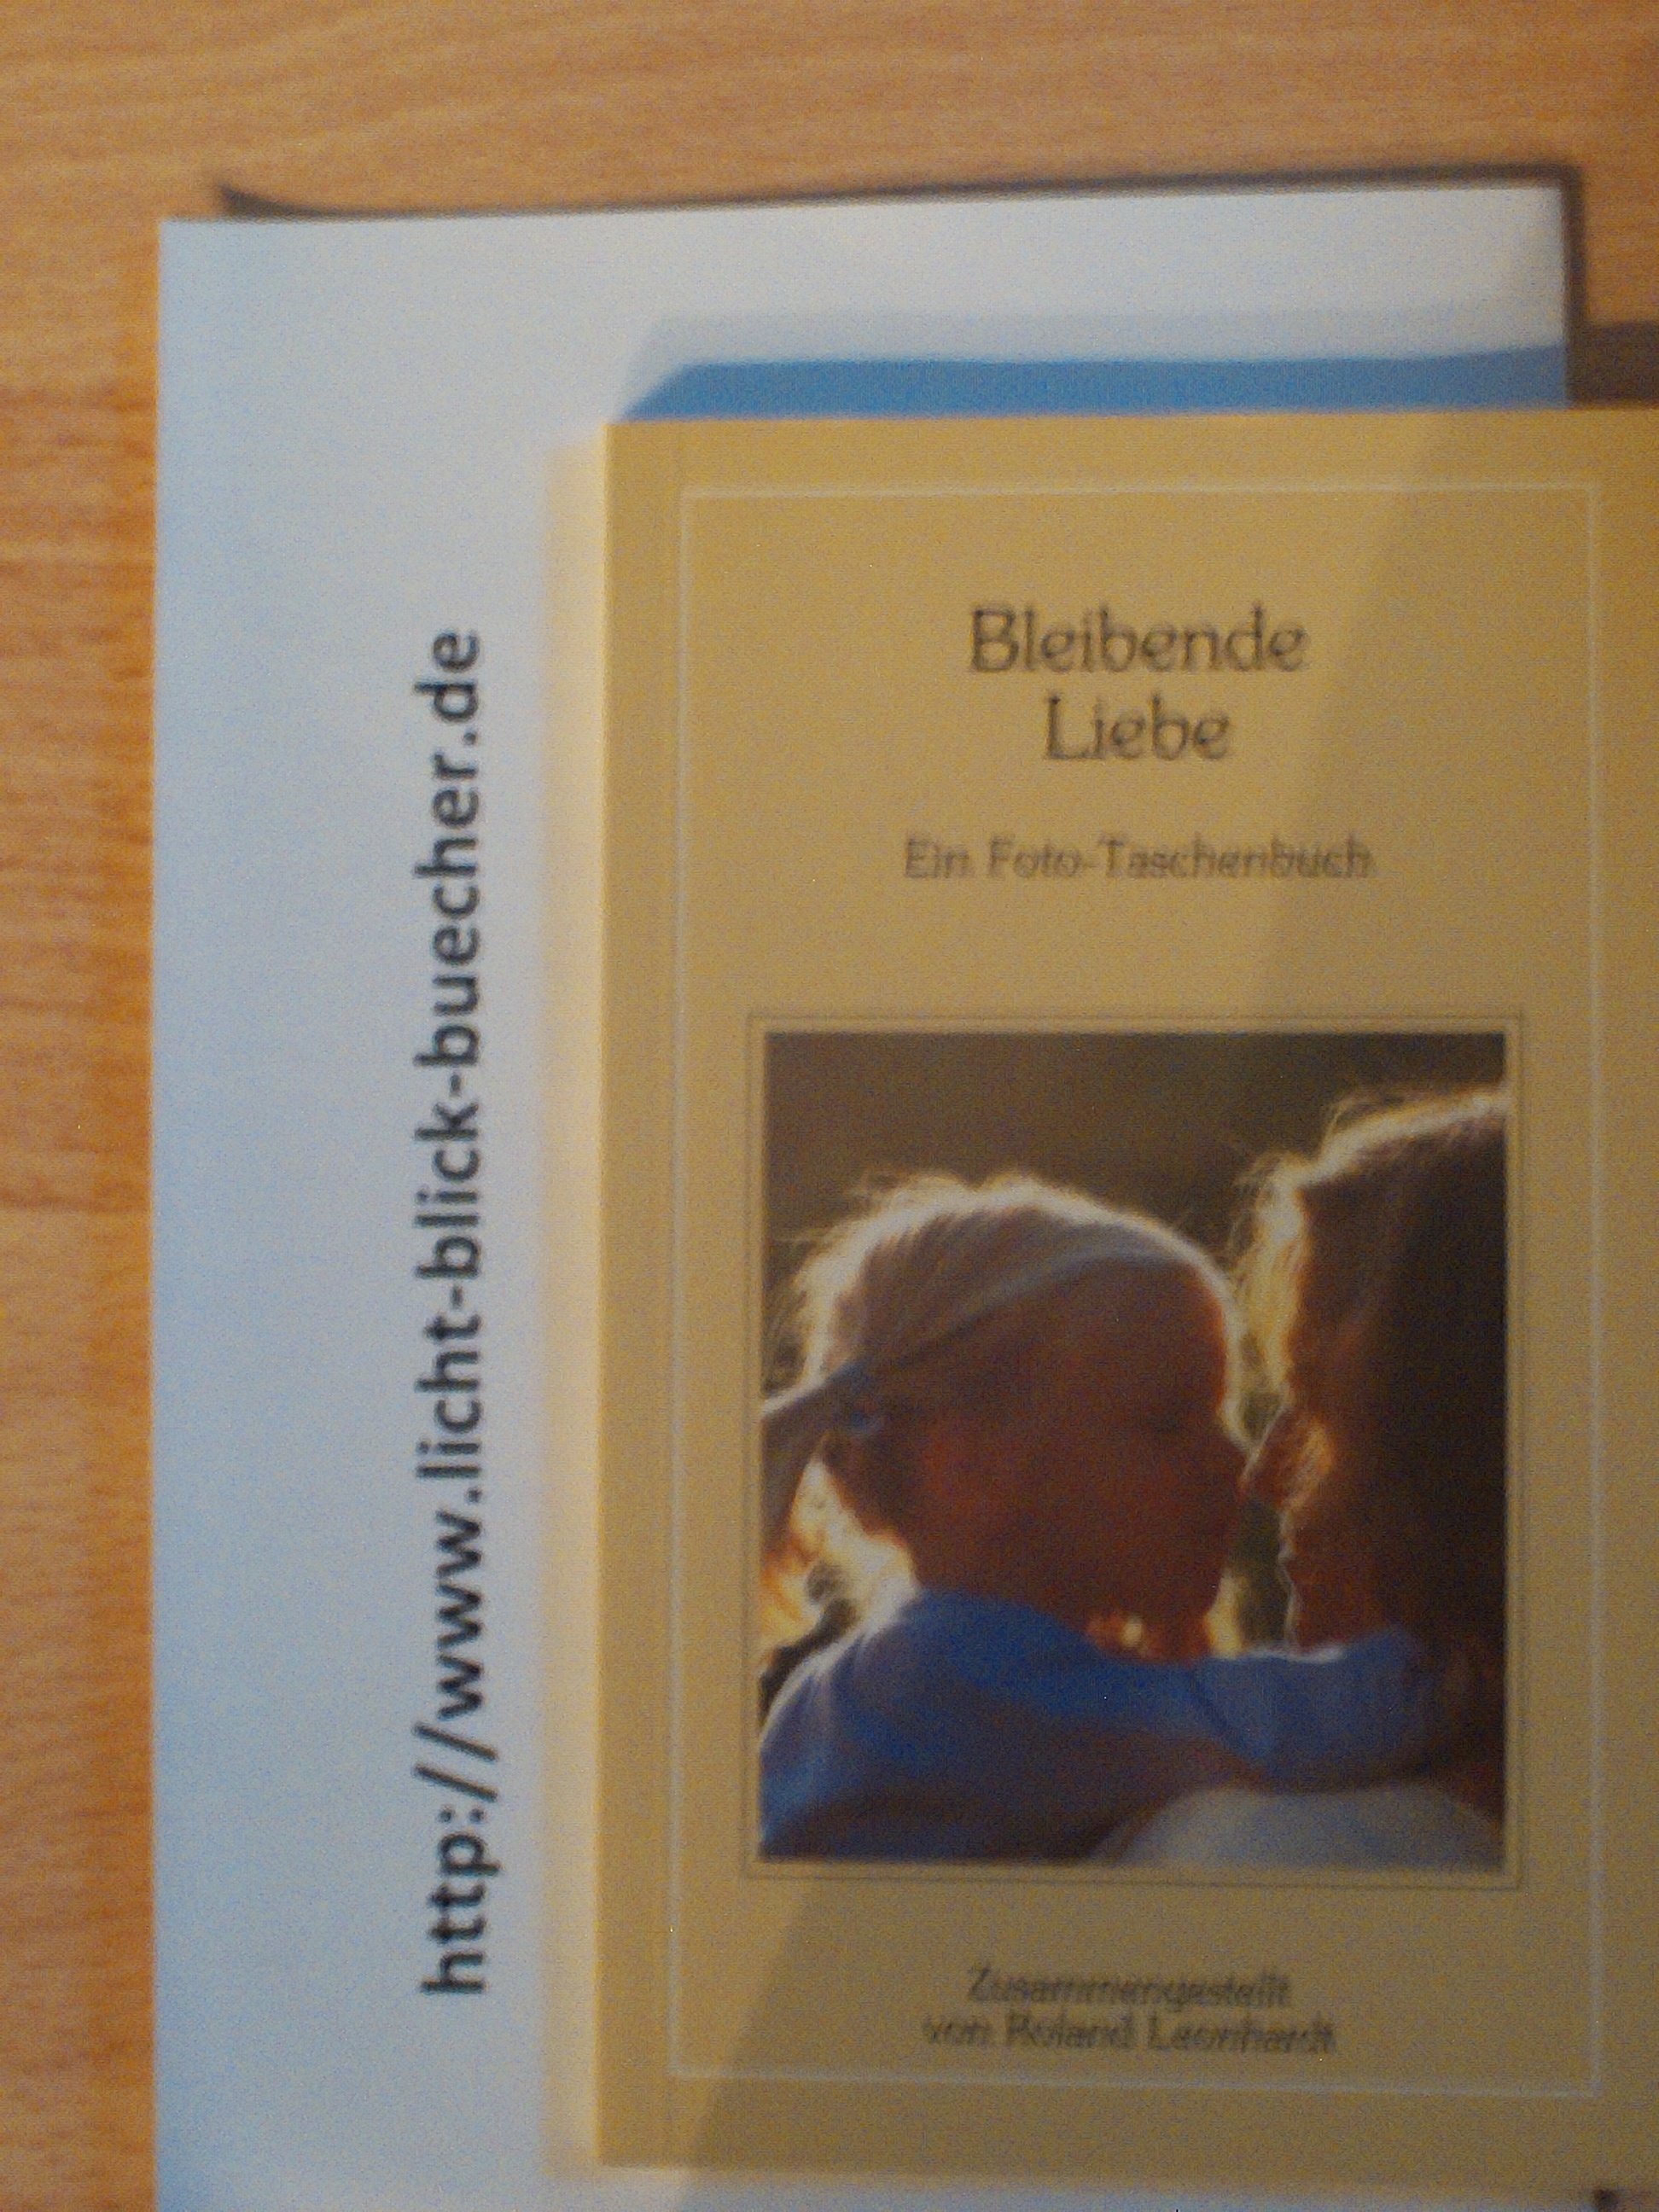 Bleibende Liebe Ein Foto Taschenbuchzusammengestellt von Roland Leonhardt